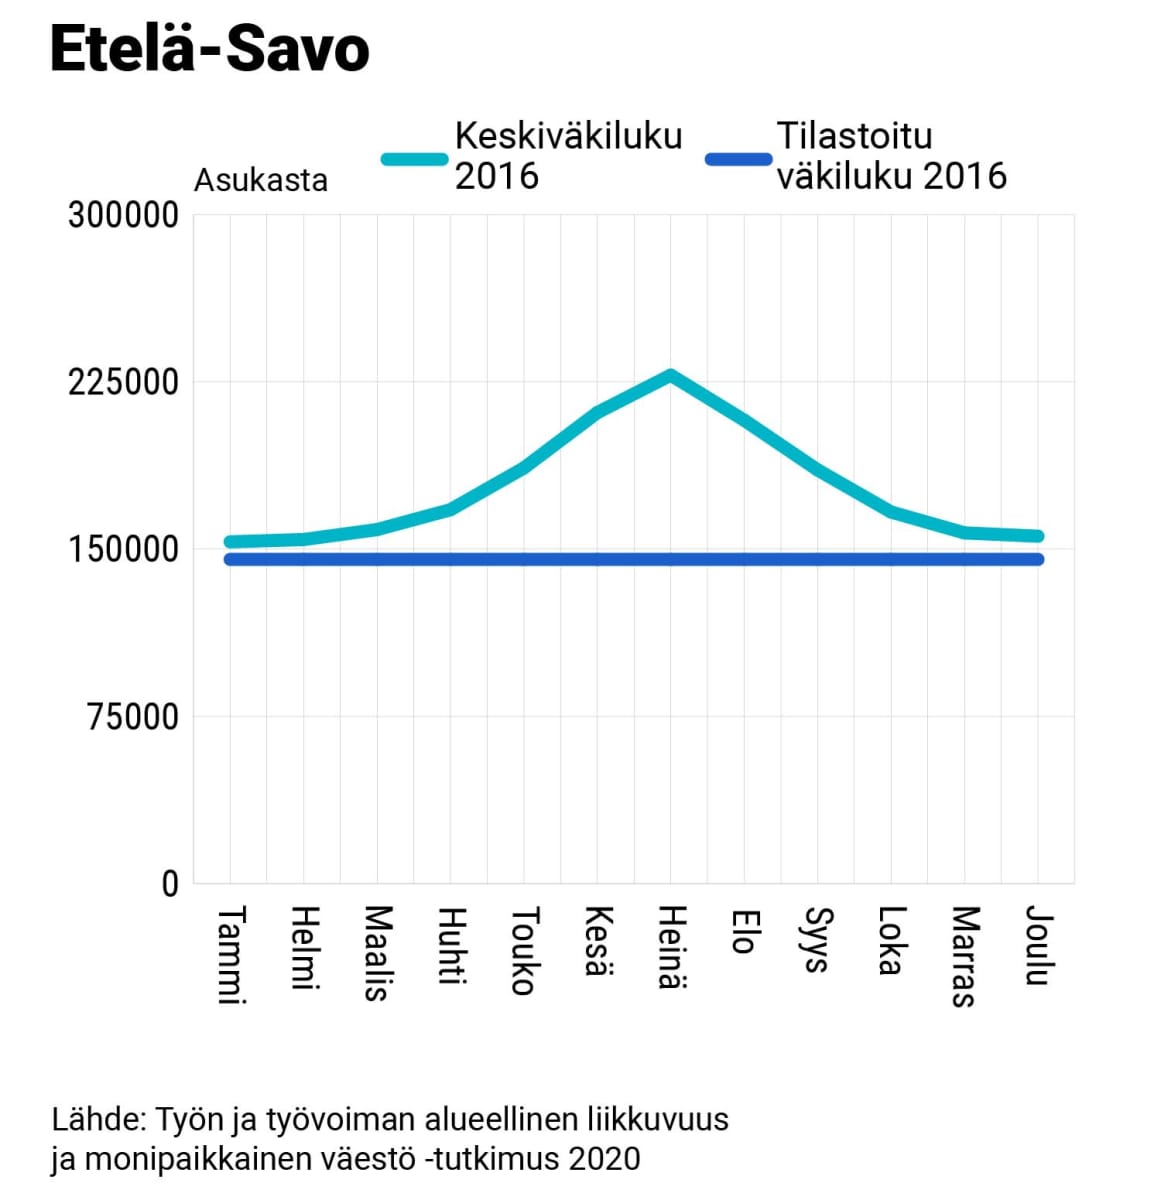 Etelä-Savon keskiväkiluku ja tilastoitu väkiluku, 2016